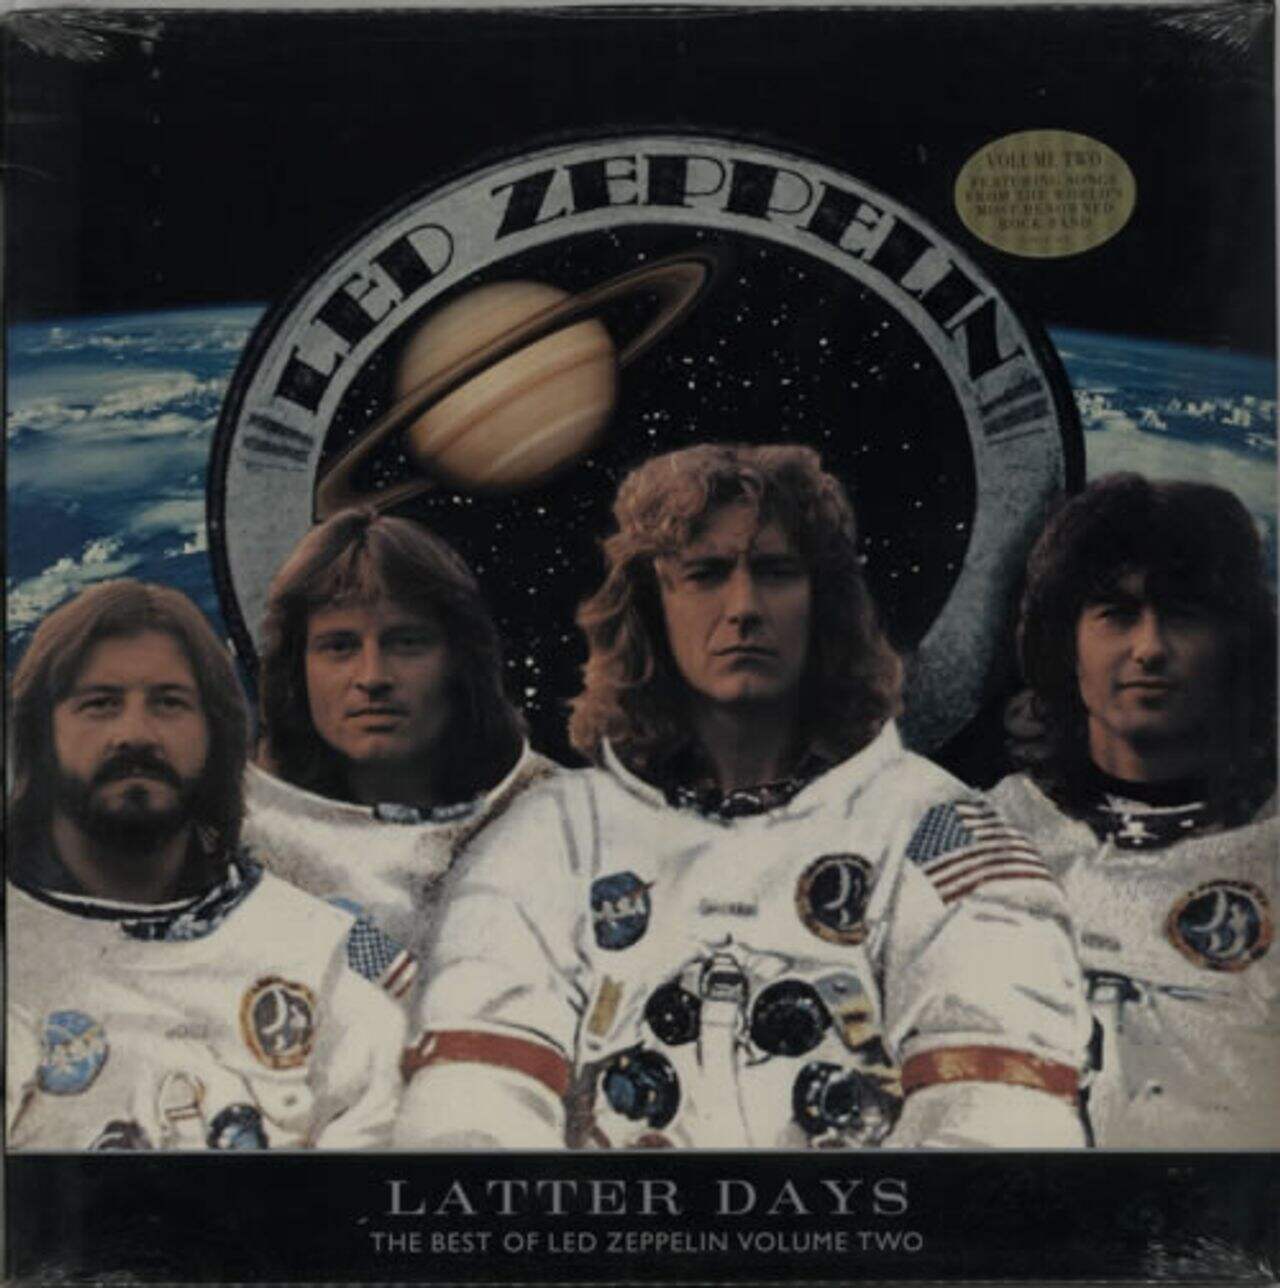 Led Zeppelin Latter Days - The Best Of Led Zeppelin Vol. 2 - Sealed US 2-LP vinyl set